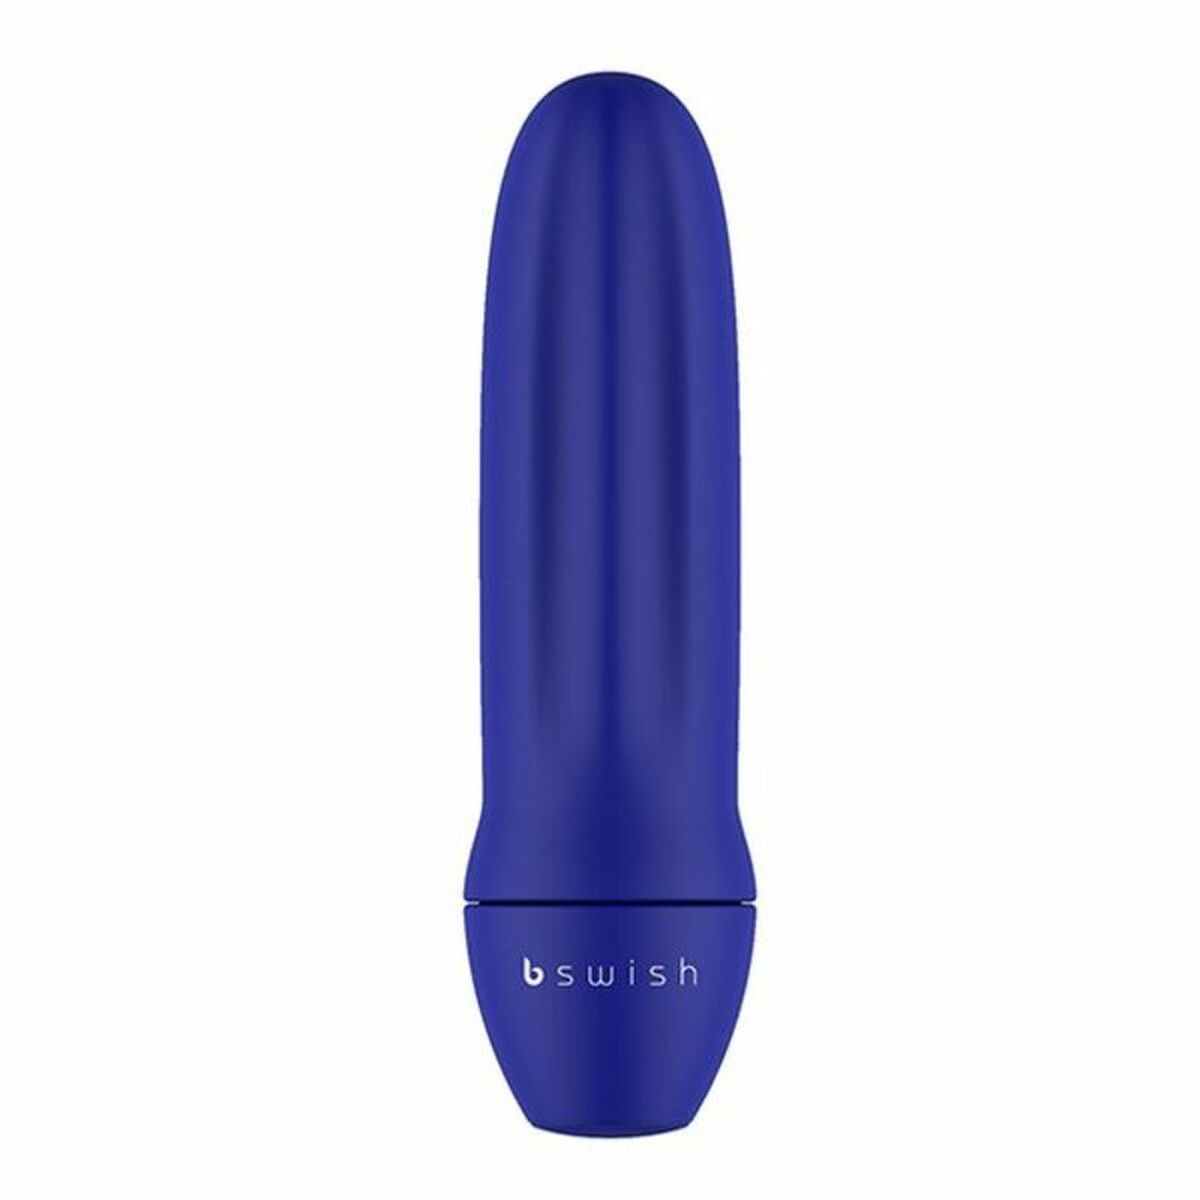 B Swish Basics Blau Vibrator